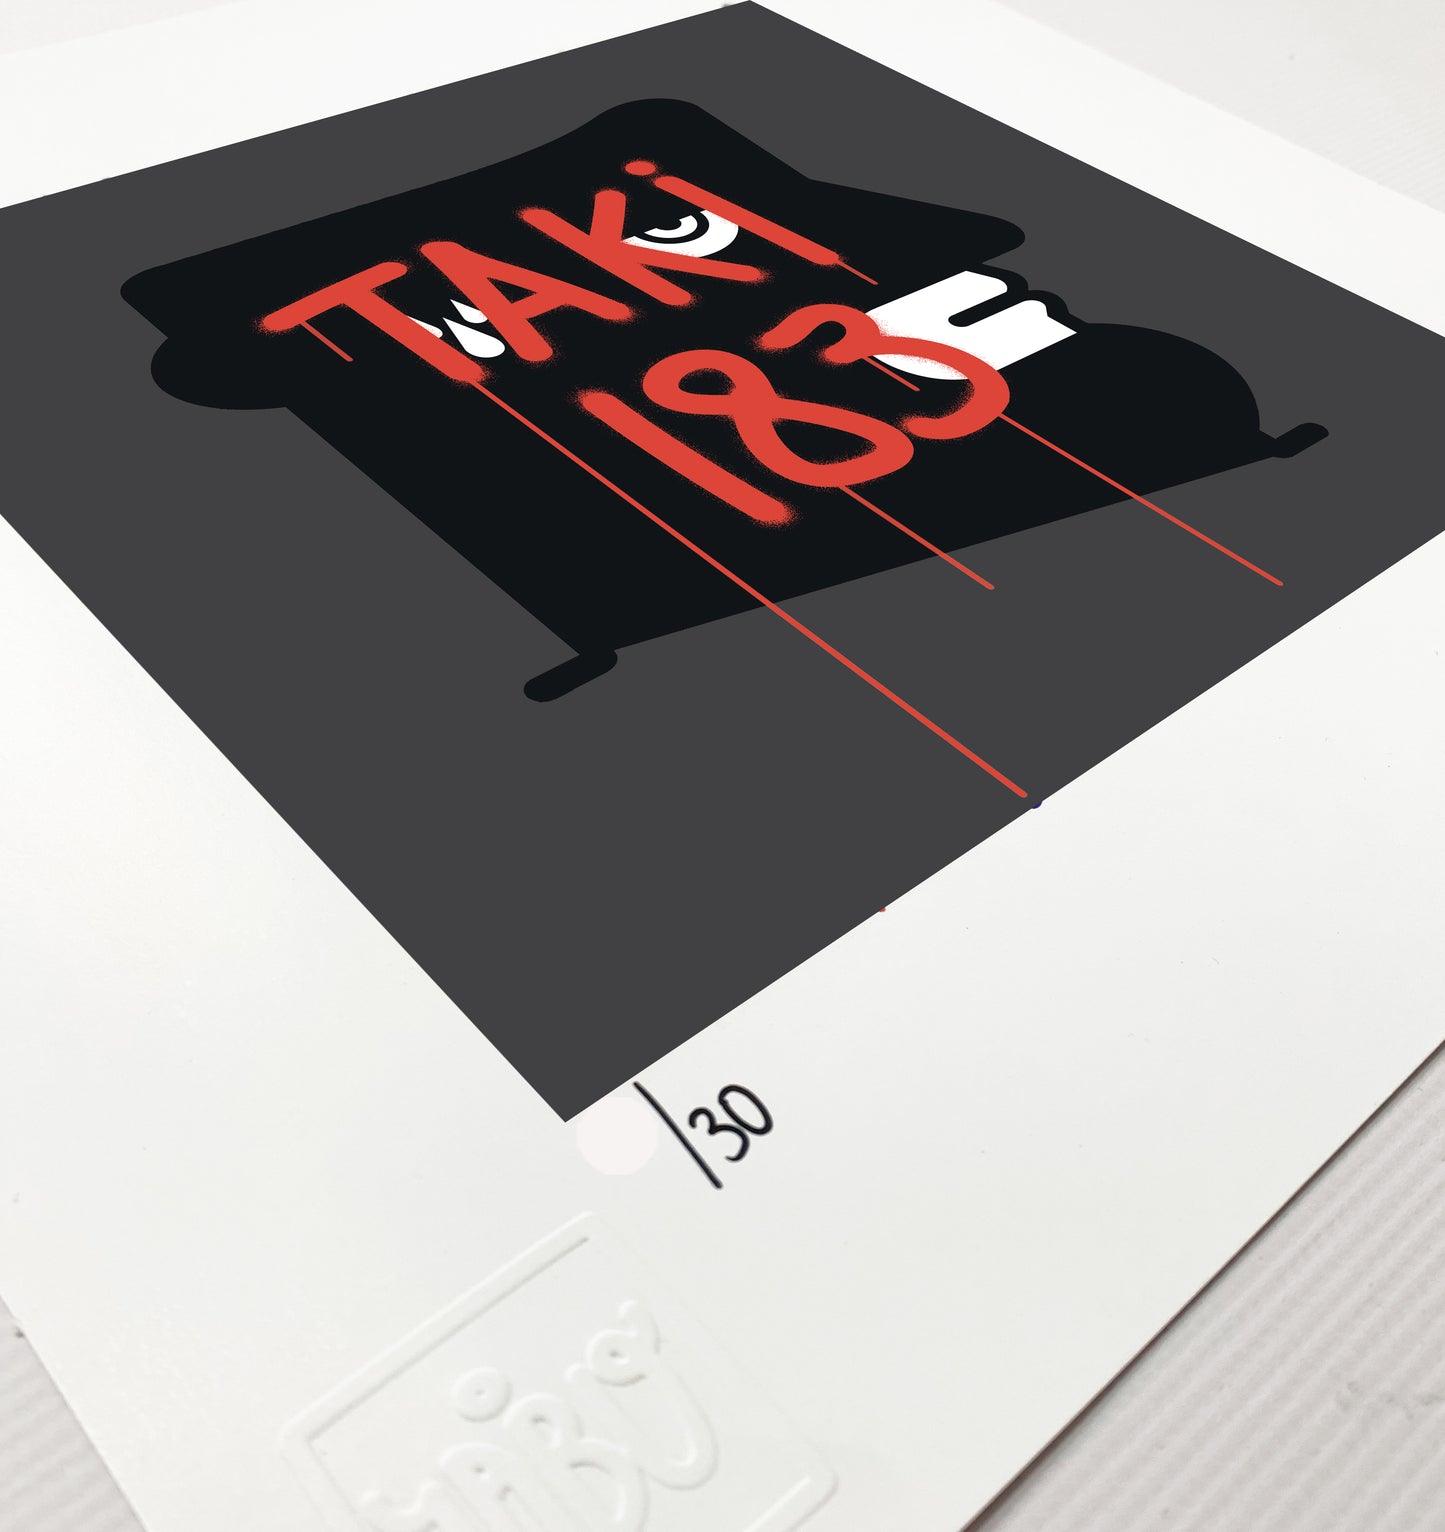 Taki 183 Classic (IABO-tribute 50th Anniversary)